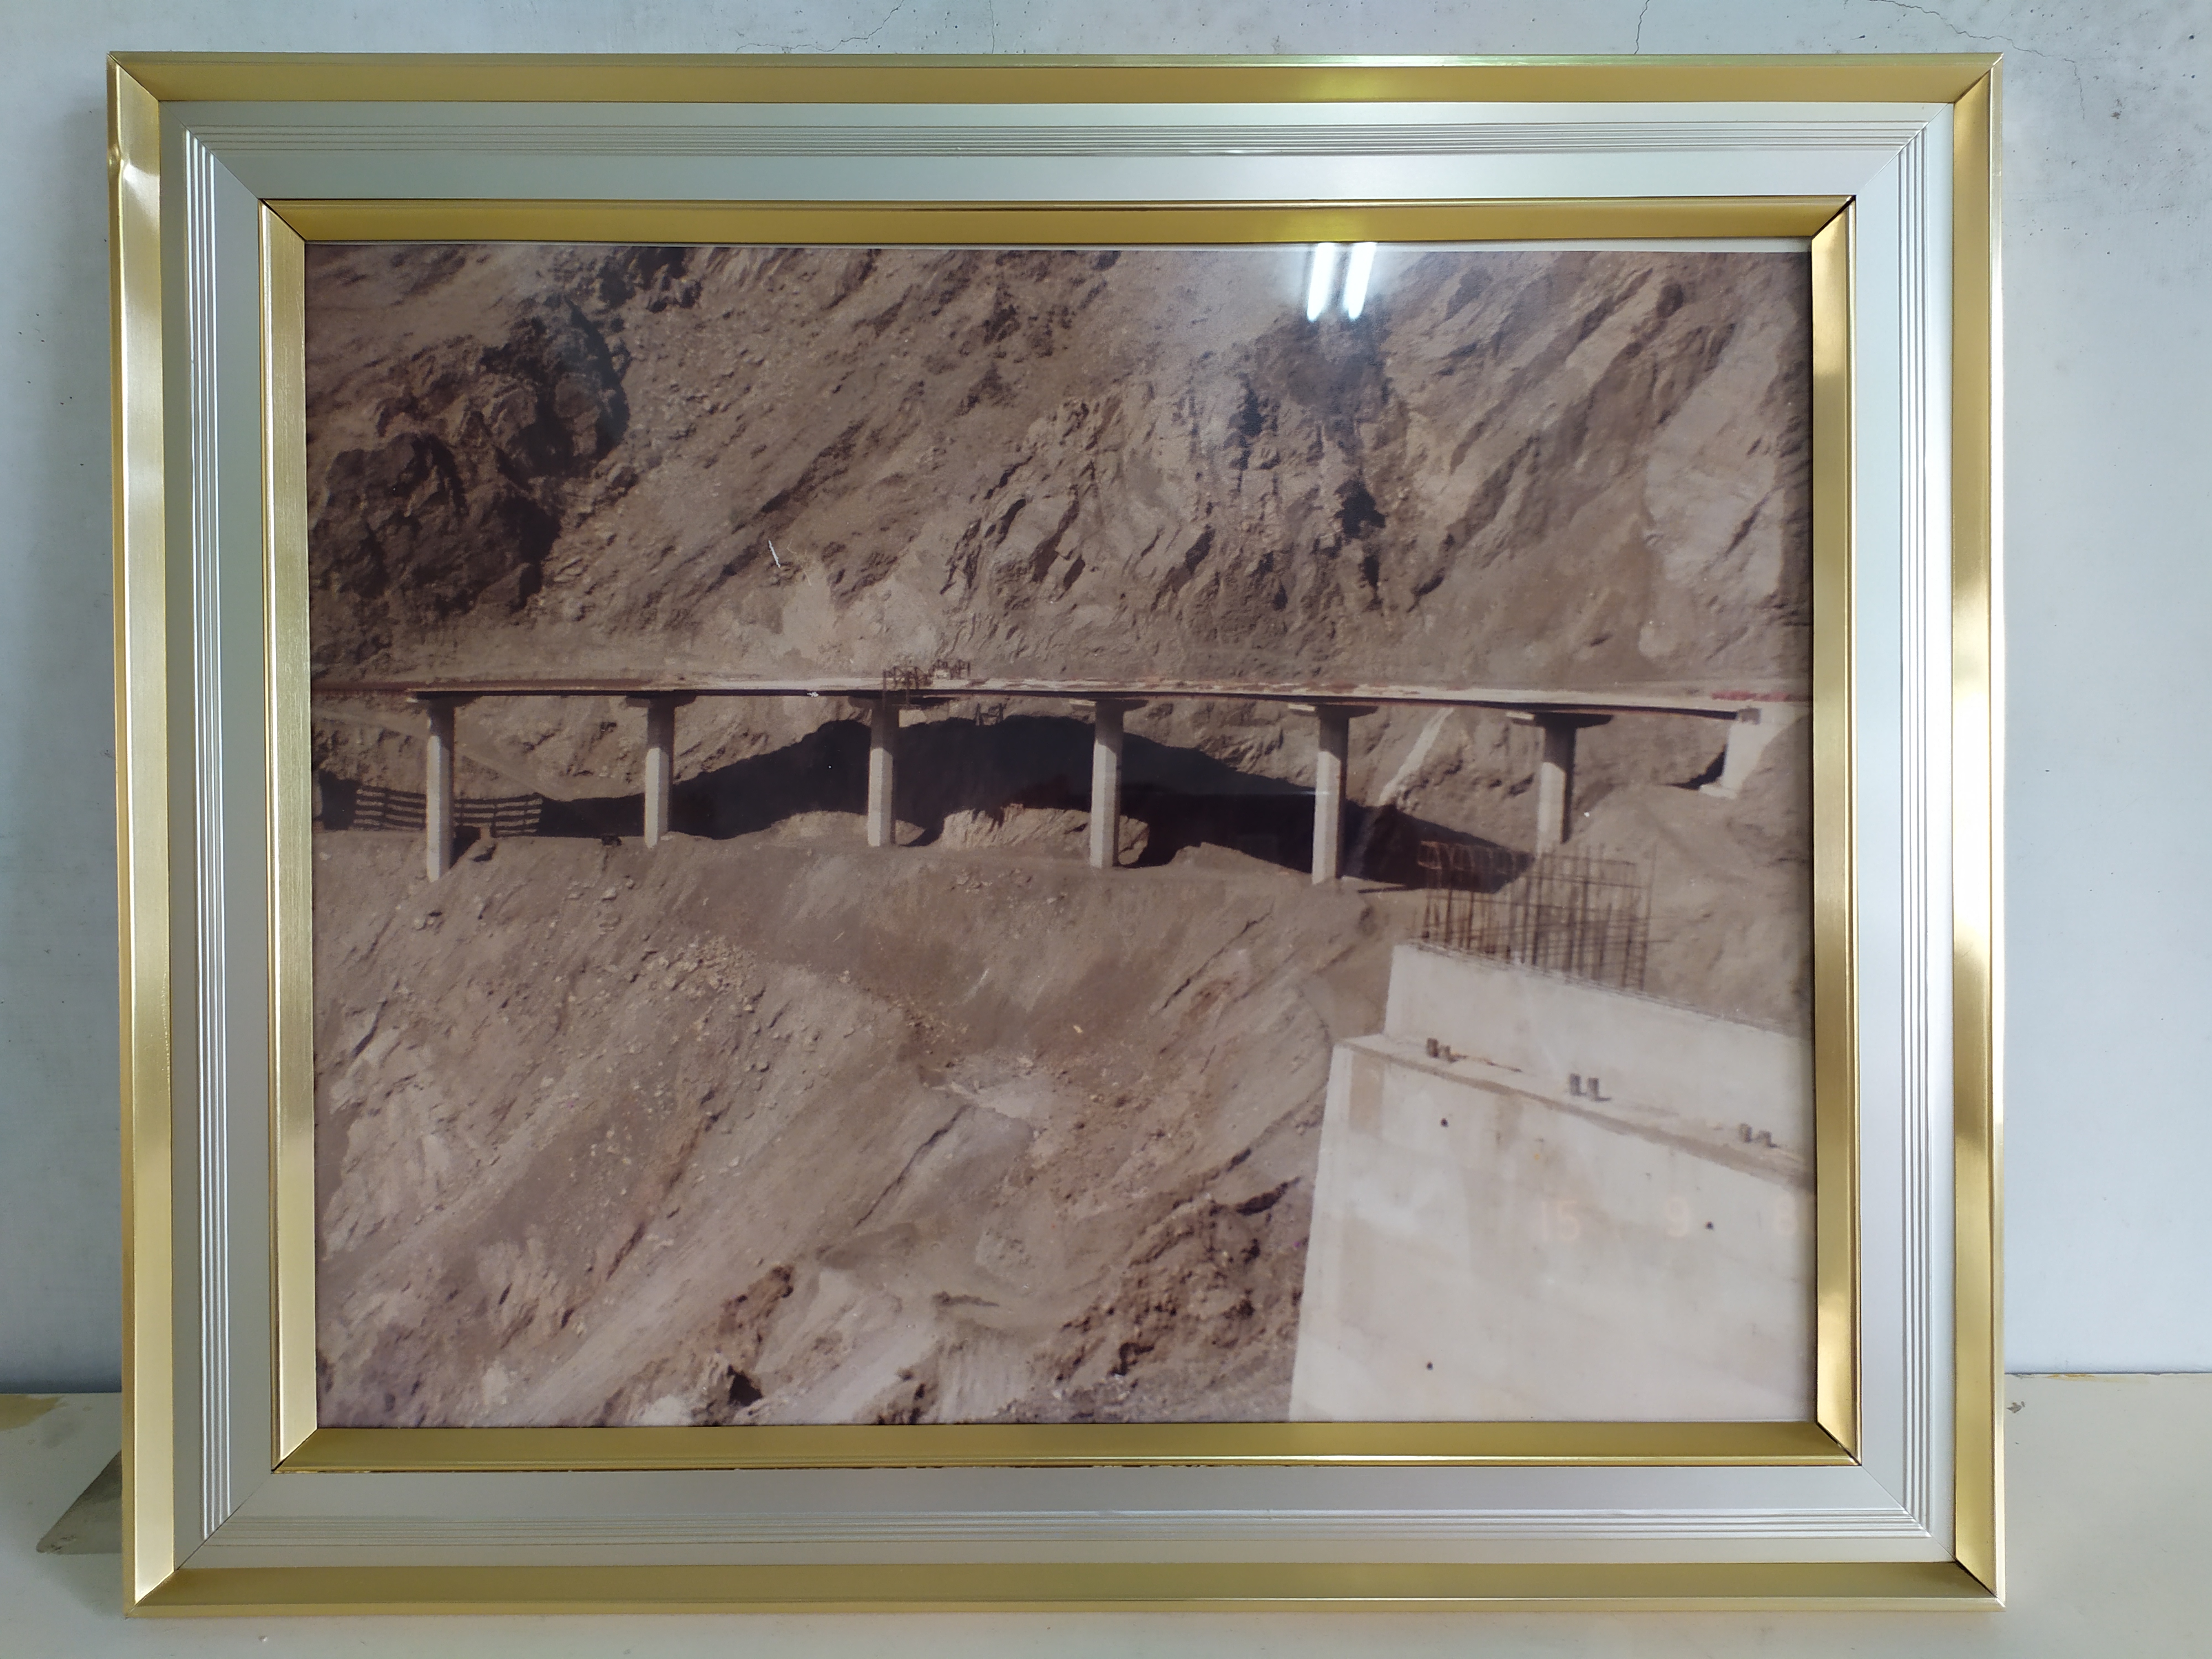 夏爾降坡道路完成後矗立山崖邊的高架橋樑(裱框照)